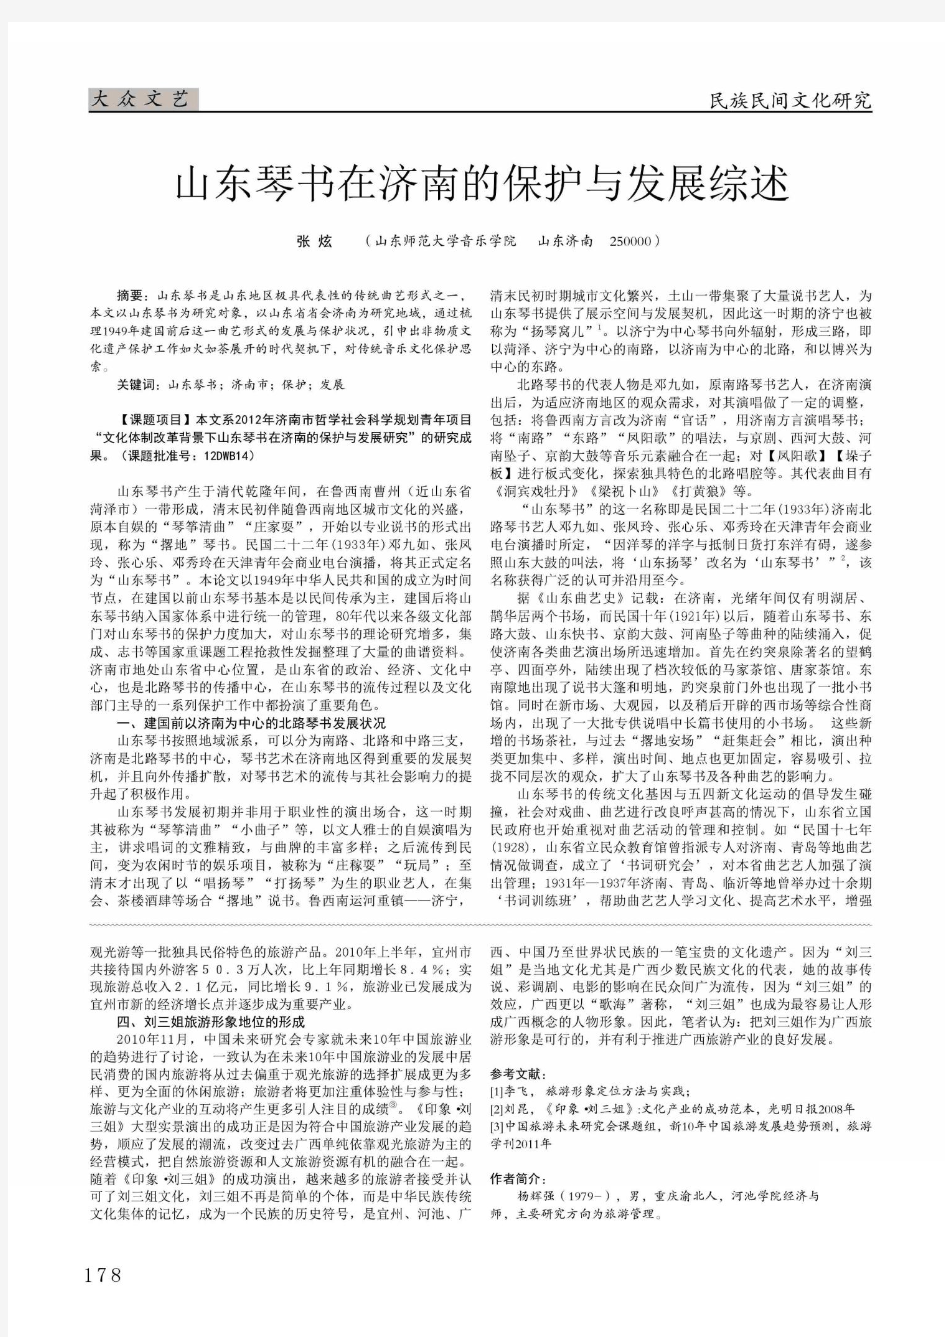 山东琴书在济南的保护与发展综述